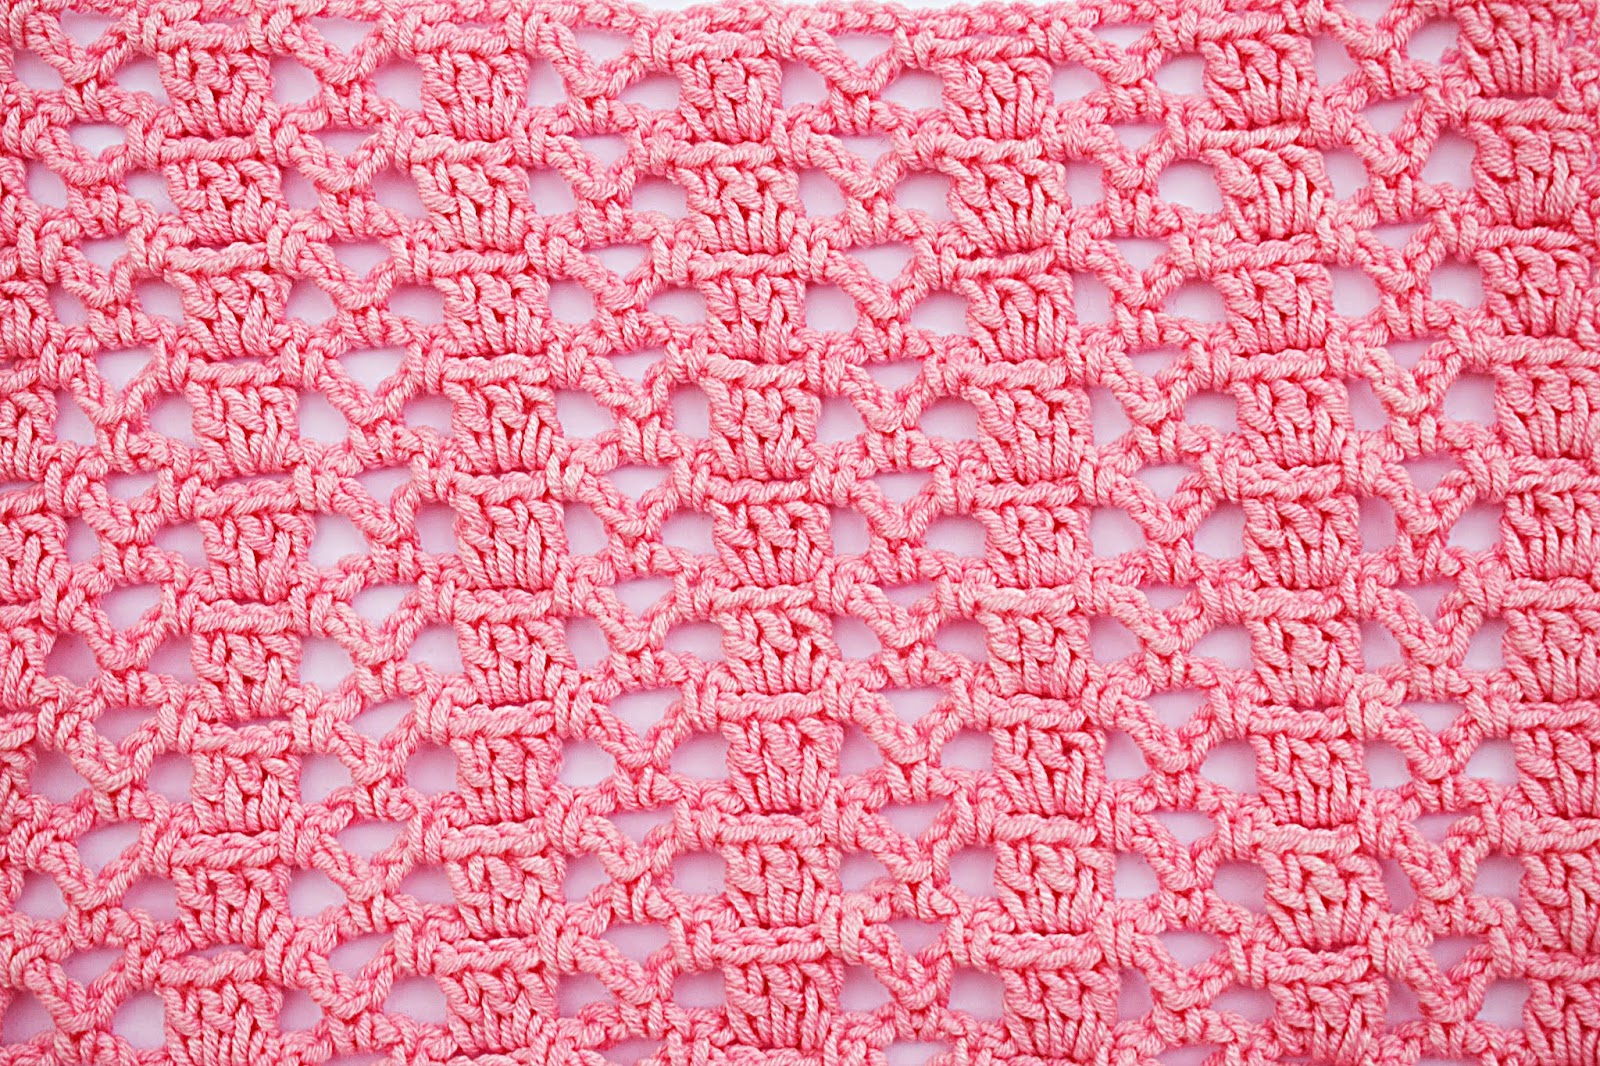 1 Crochet Imagen Puntada Para Blusas Muy Fácil Y Sencilla A Crochet Y